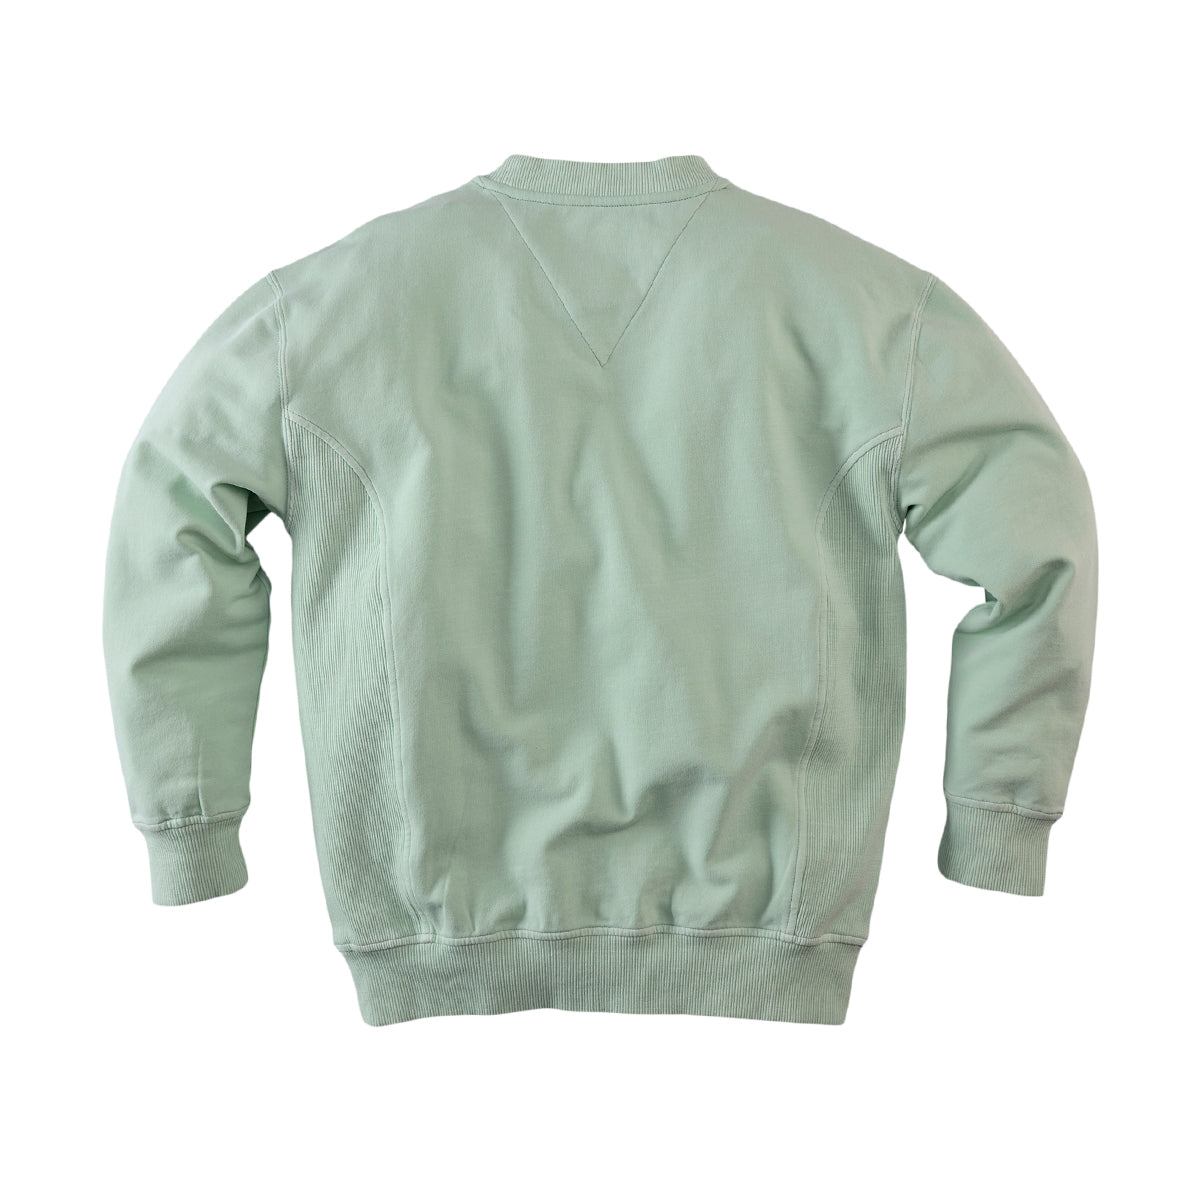 Jongens Sweater Justin van Z8 in de kleur Summer salix in maat 140-146.